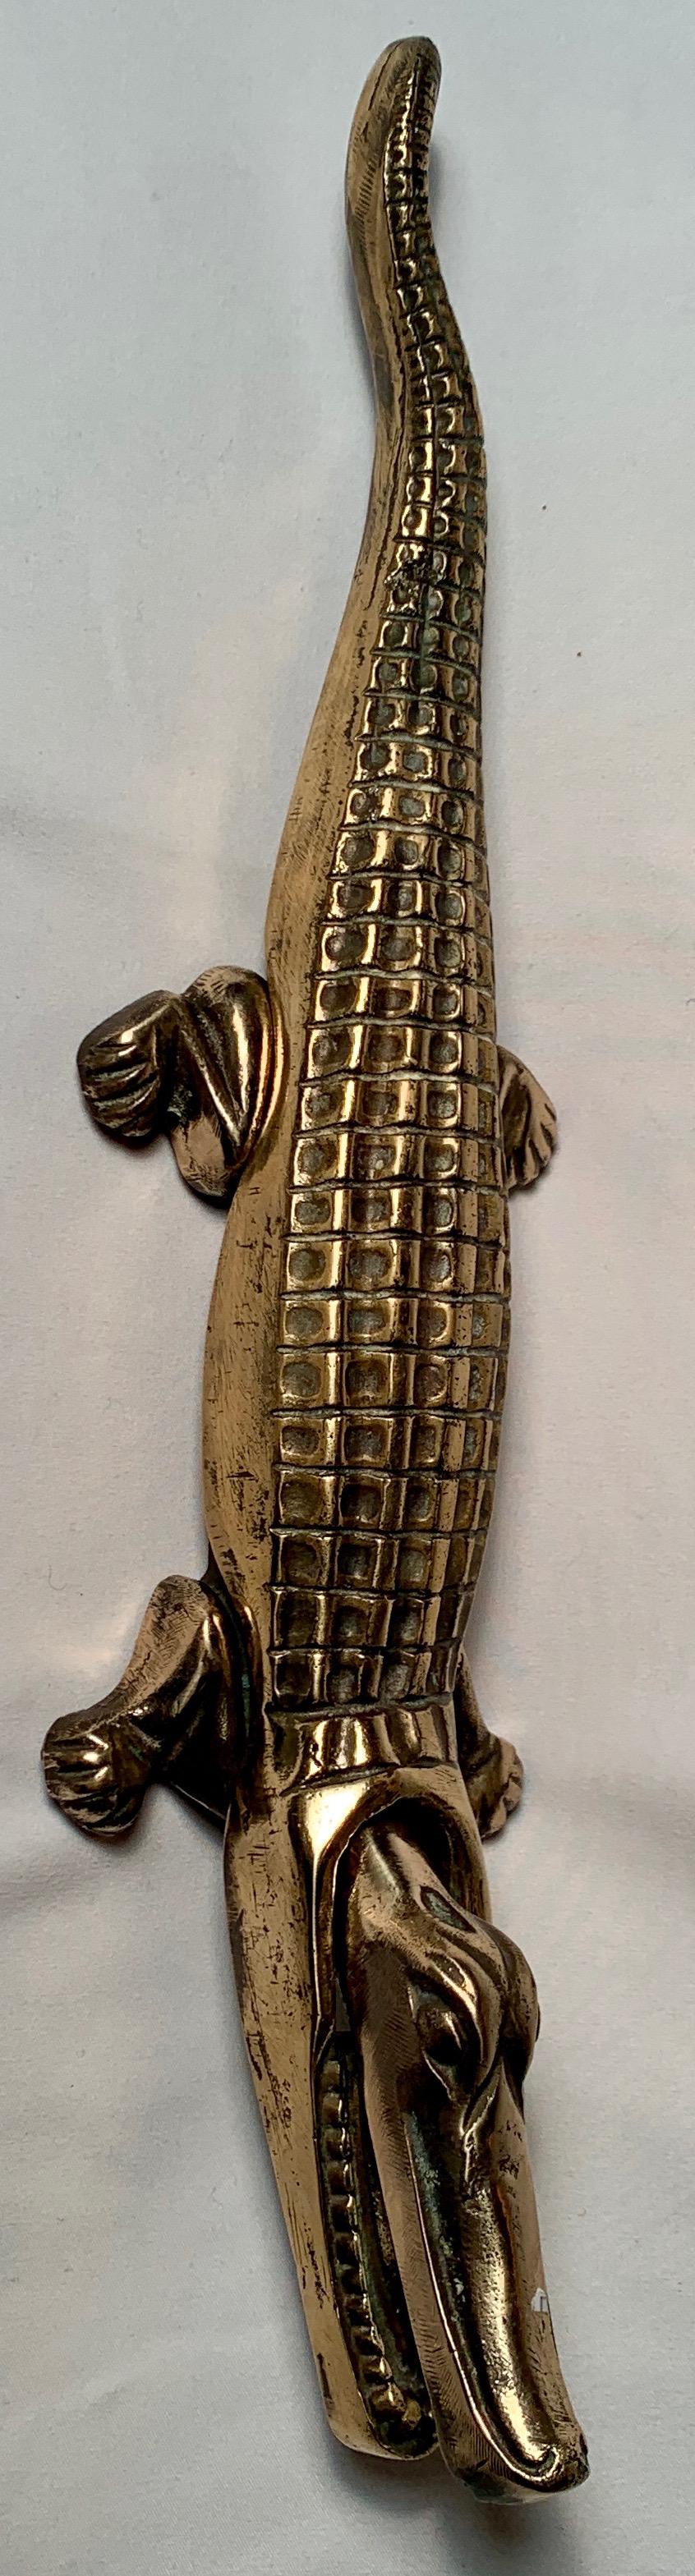 Antique English brass nutcracker alligator.